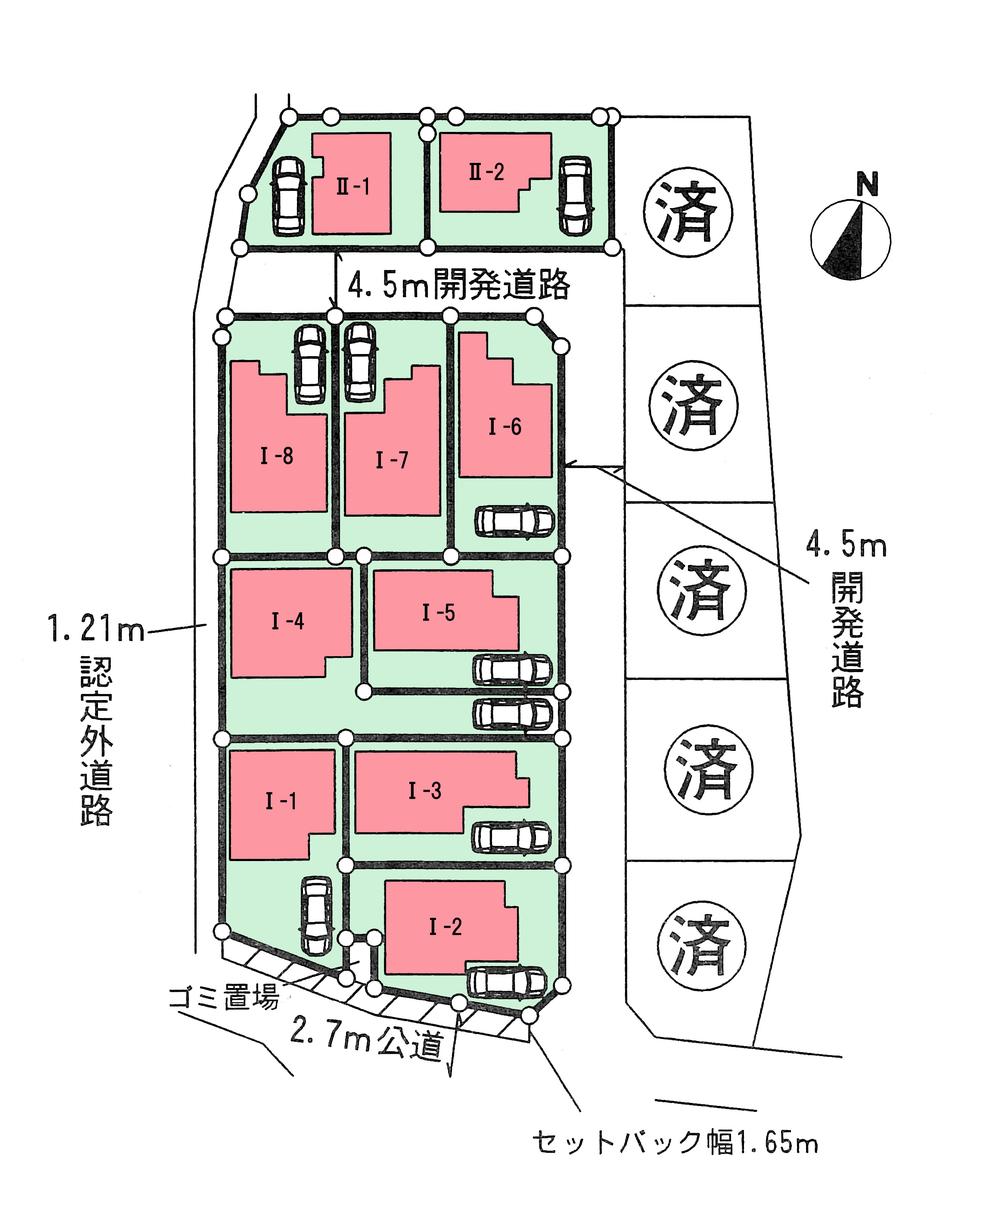 Compartment figure. 31,800,000 yen, 4LDK, Land area 125.5 sq m , Building area 96.88 sq m